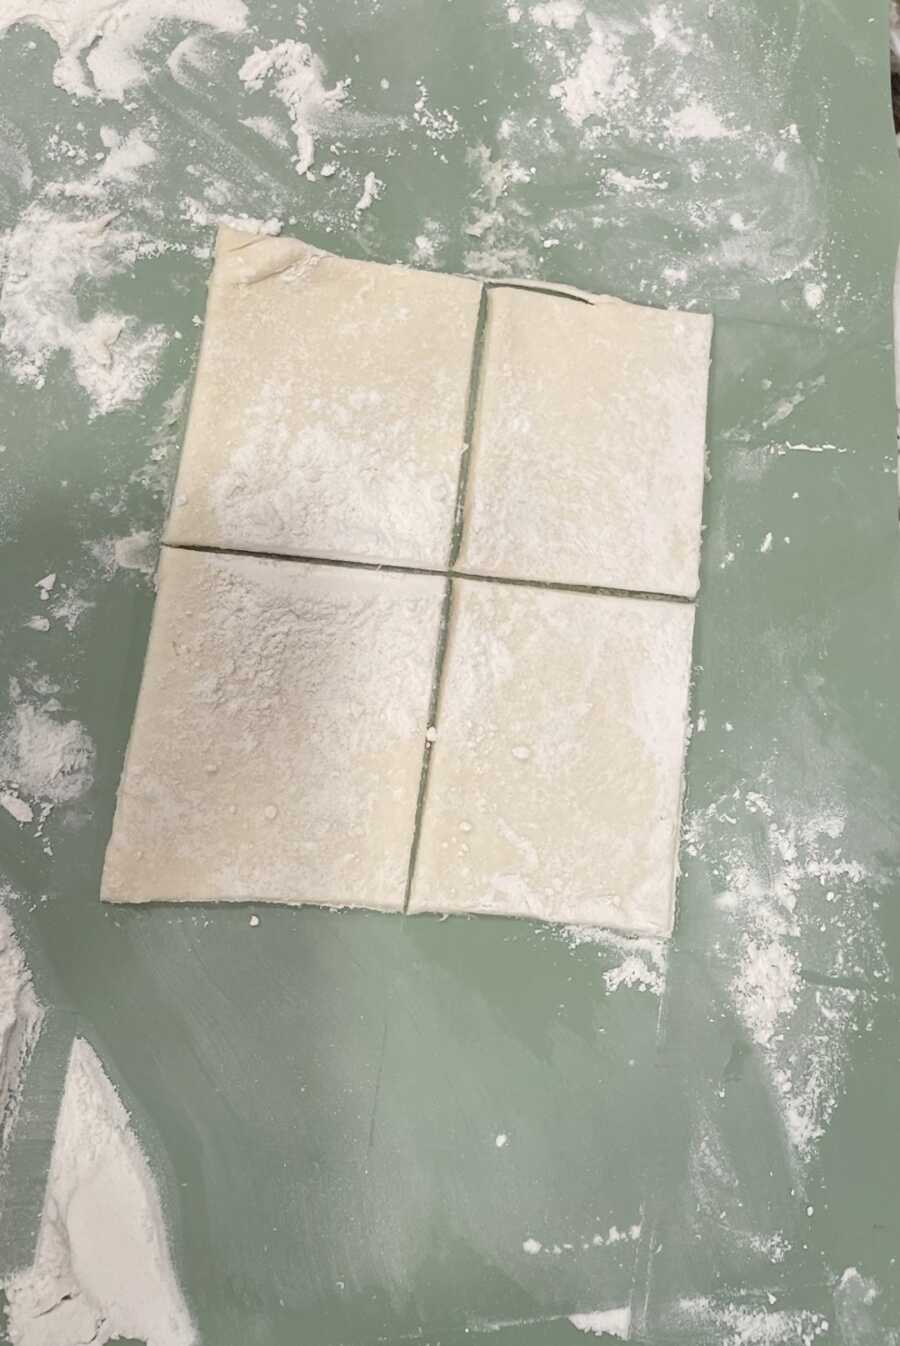 kolaches dough cut into 4 squares